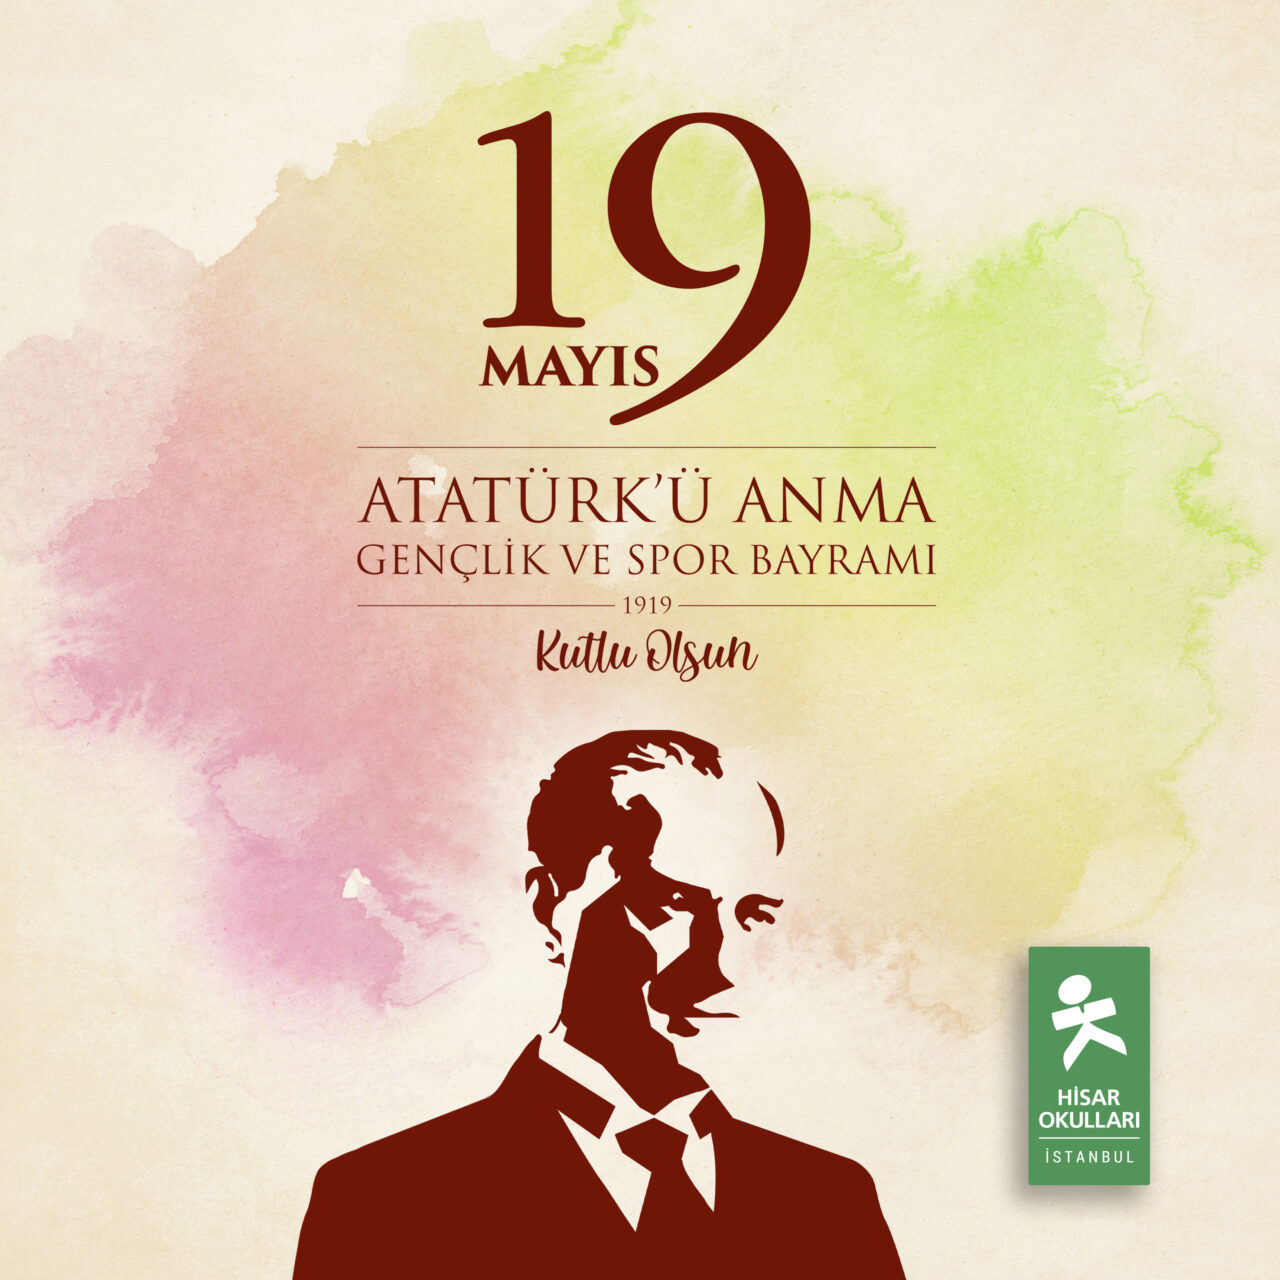 19 Mayıs Atatürk’ü Anma, Gençlik ve Spor Bayramı Programı